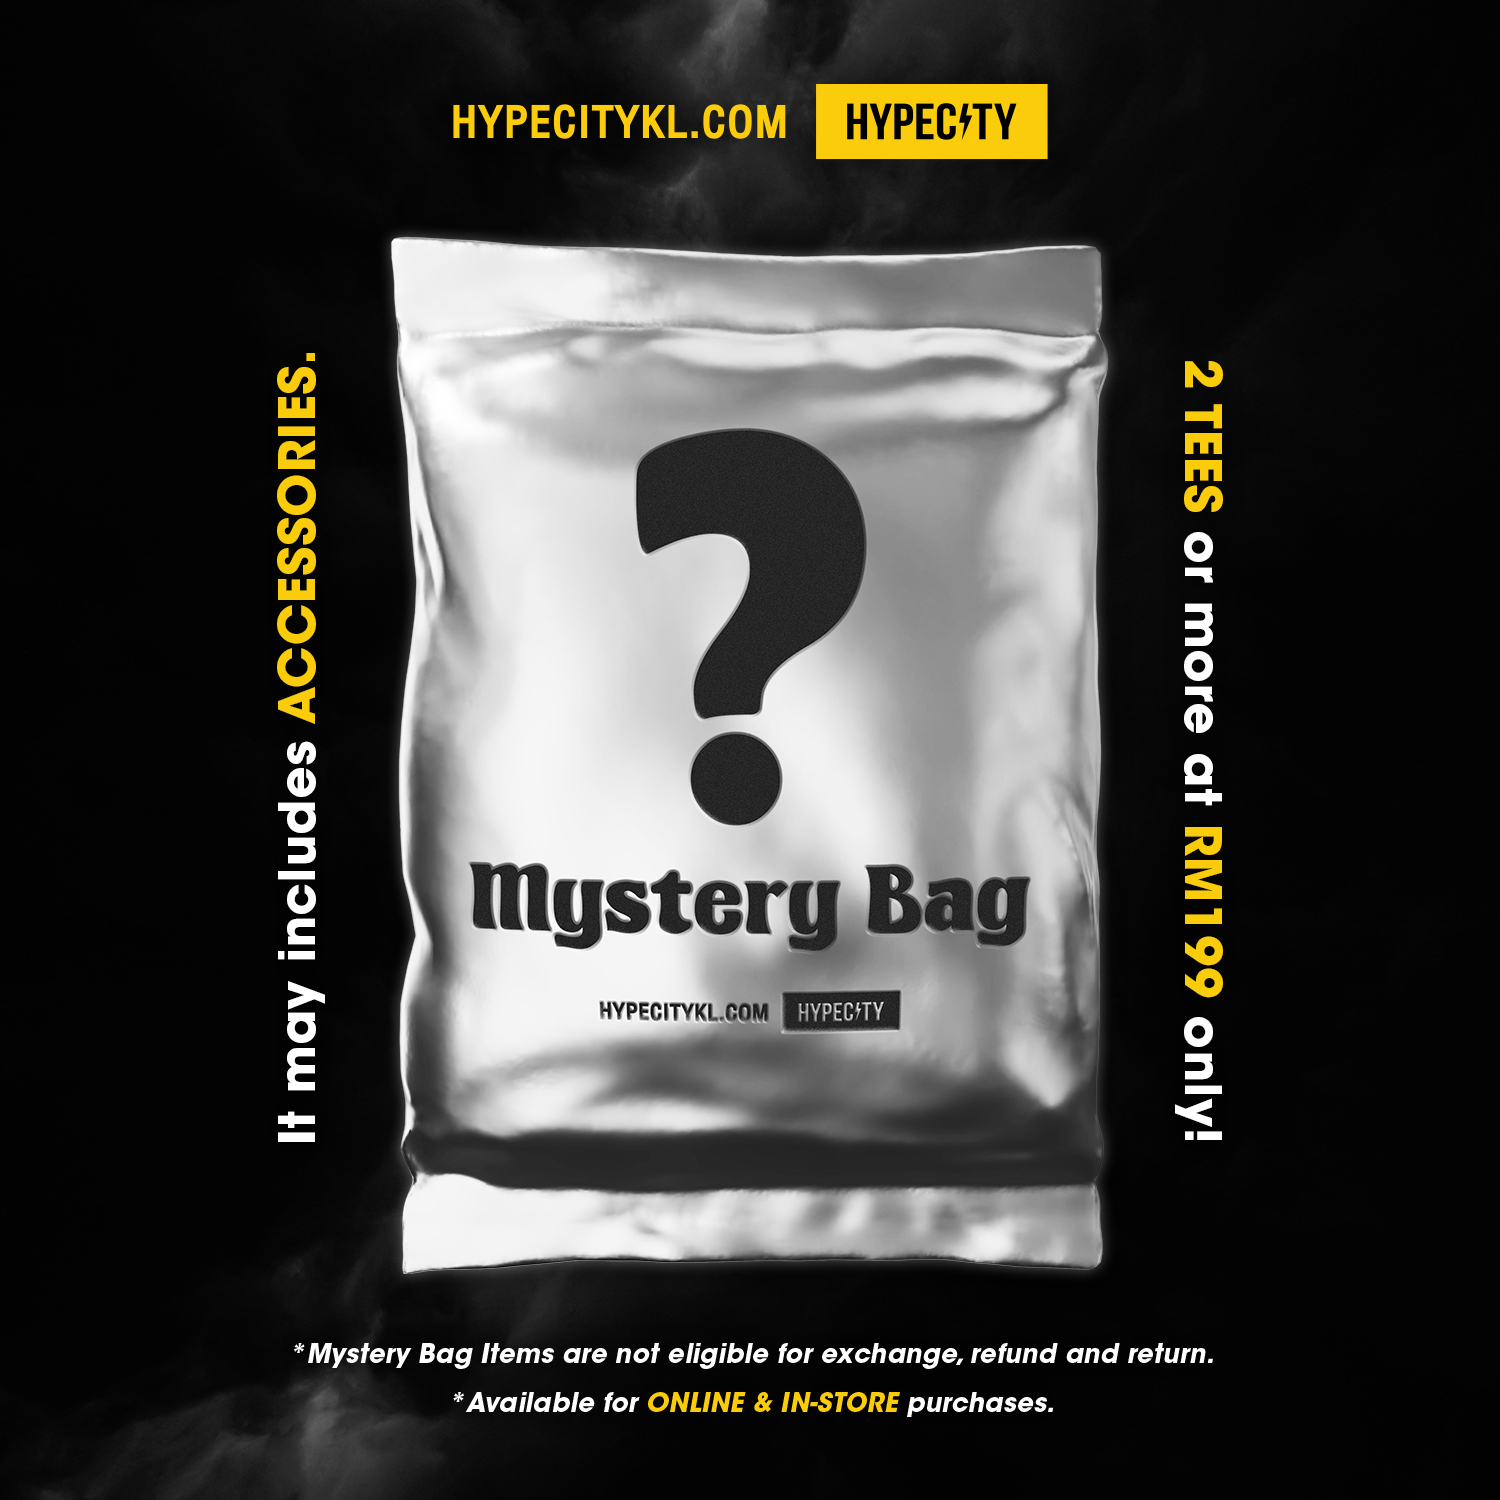 23.04.04_HYPECITY_Mystery_Bag_RM199_Timeline-03